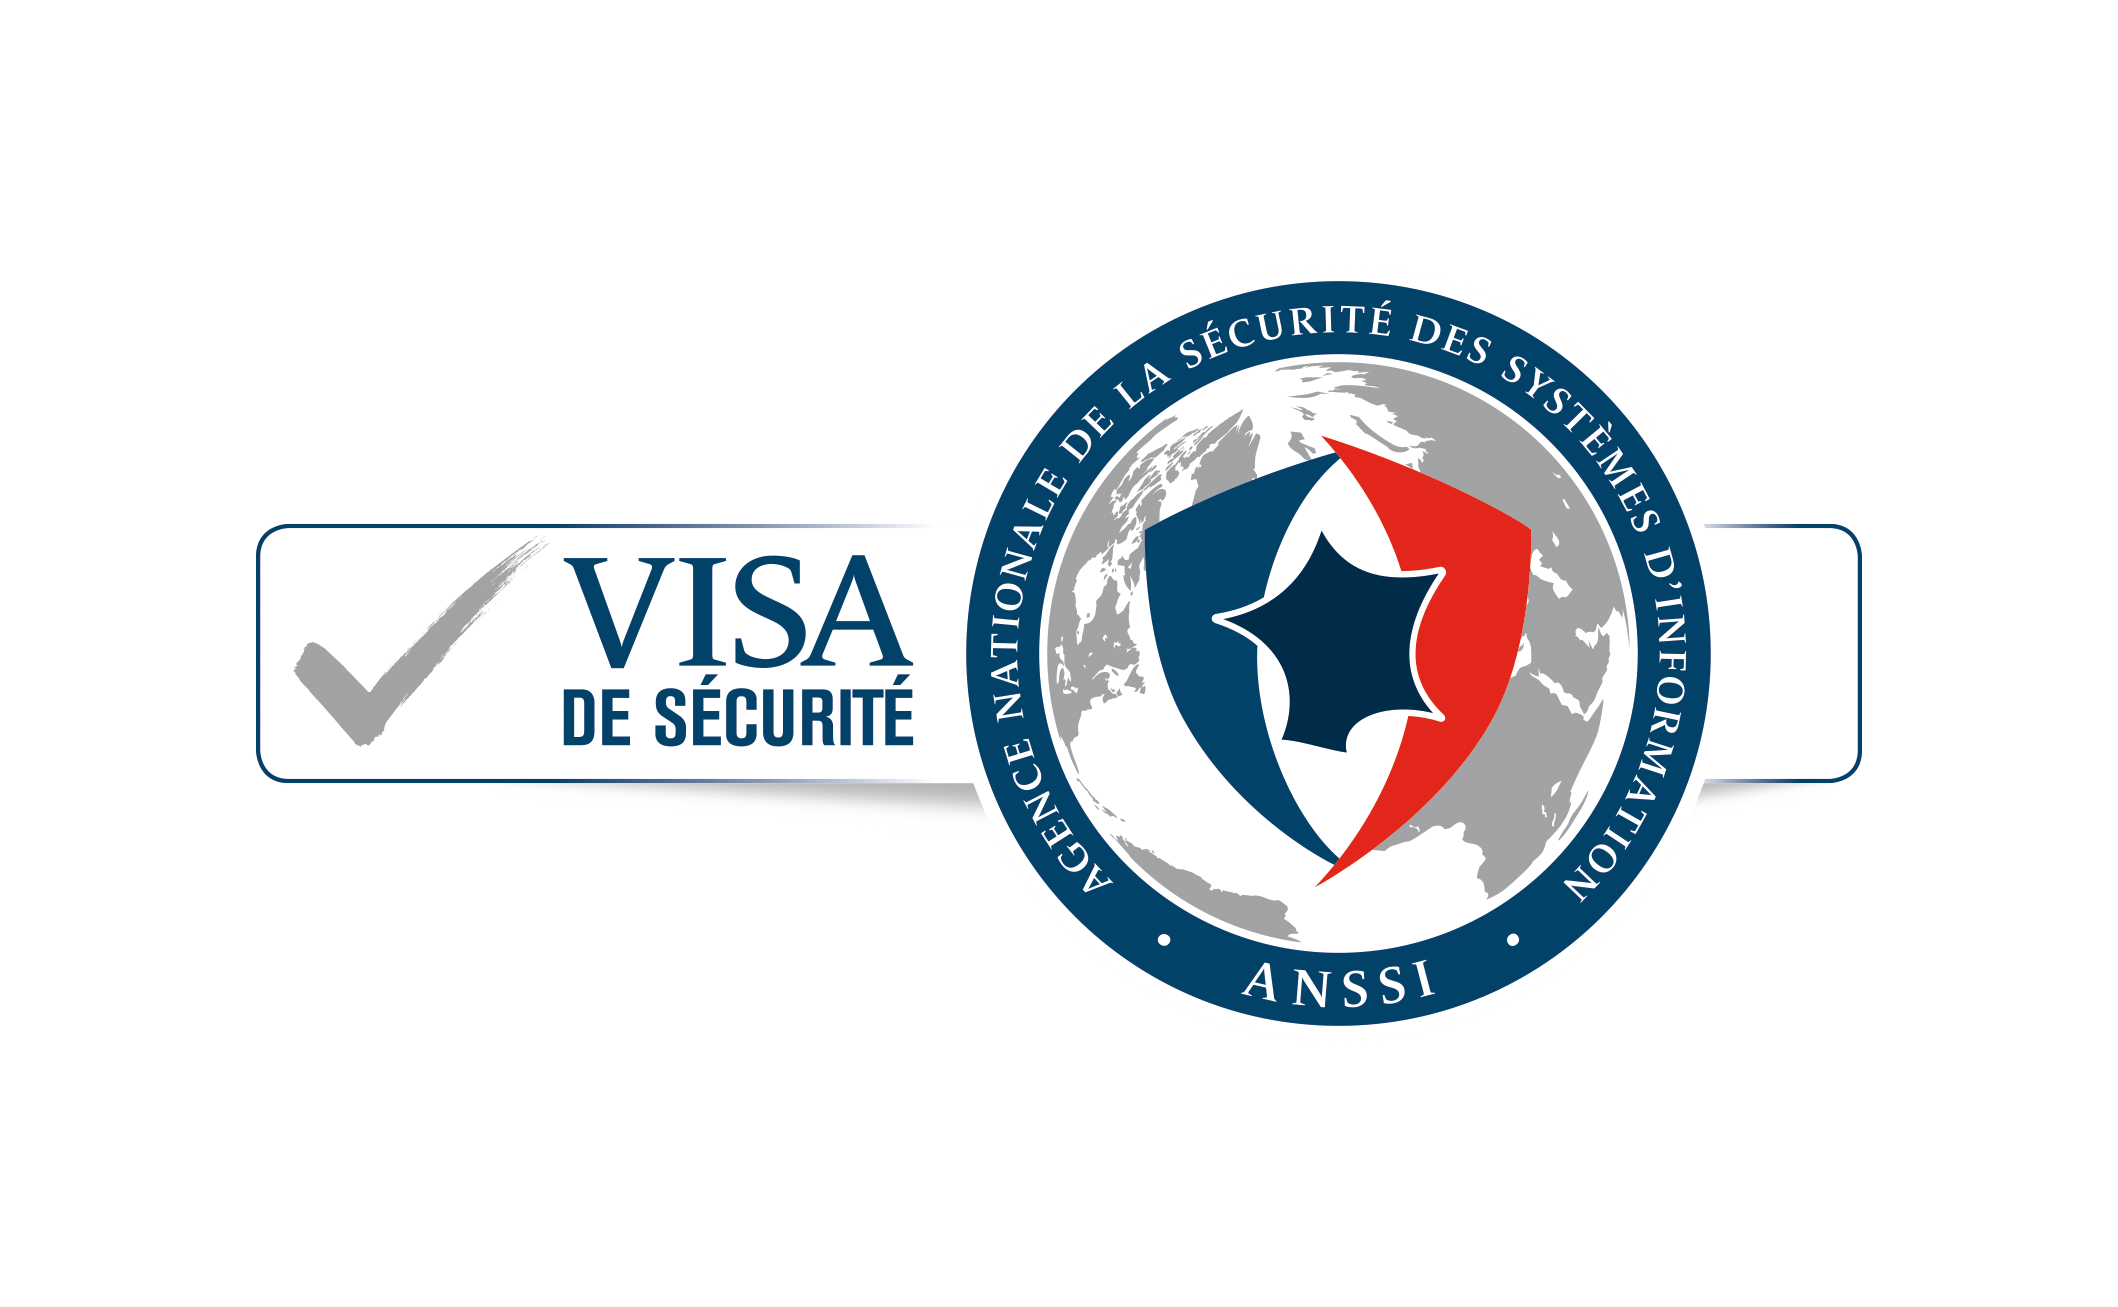 Visa de sécurité, certification ANSSI